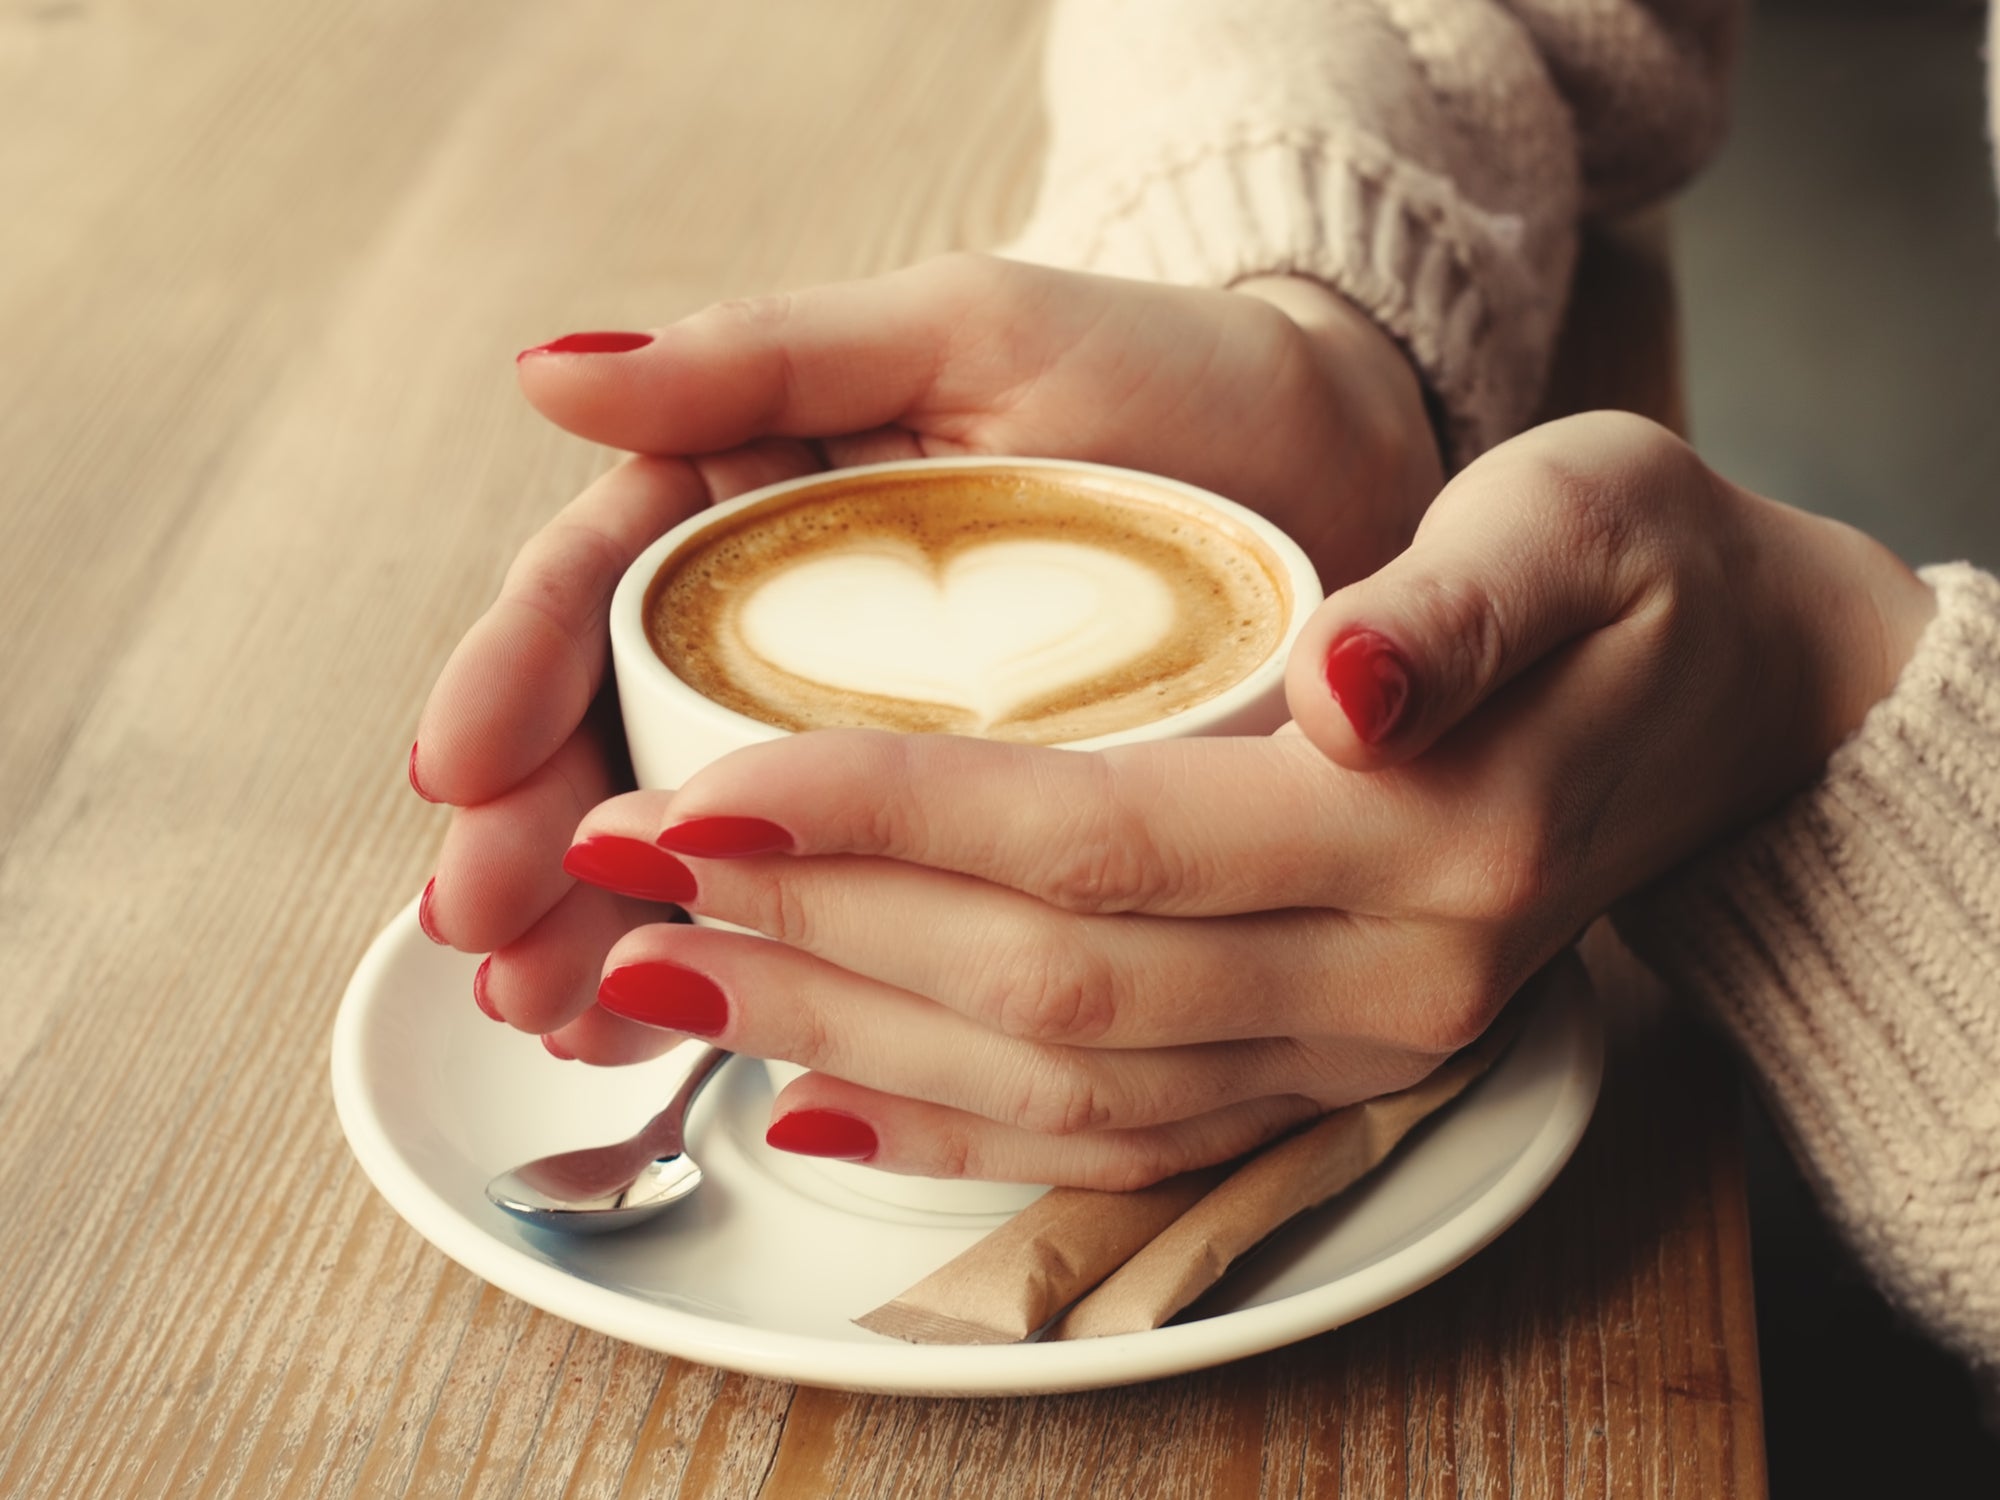 Разве можно быть такой размазней чашка стоит. Чашка кофе в руках. Кофе в руках. Девушка с чашкой кофе в руках. Чашечка кофе в руках.